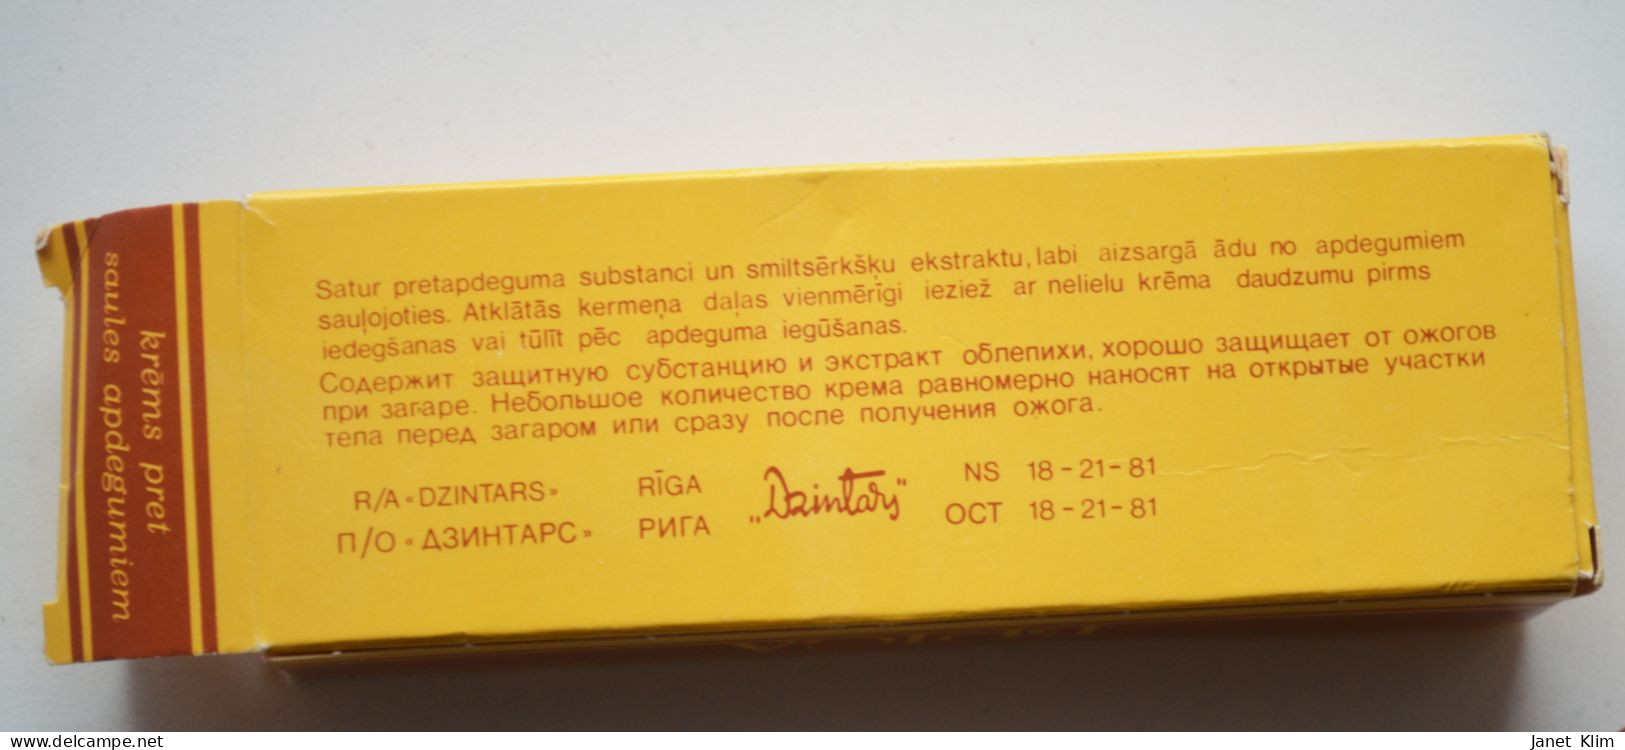 Vintage Cream Briga-dzintars Sunburn Cream - Productos De Belleza